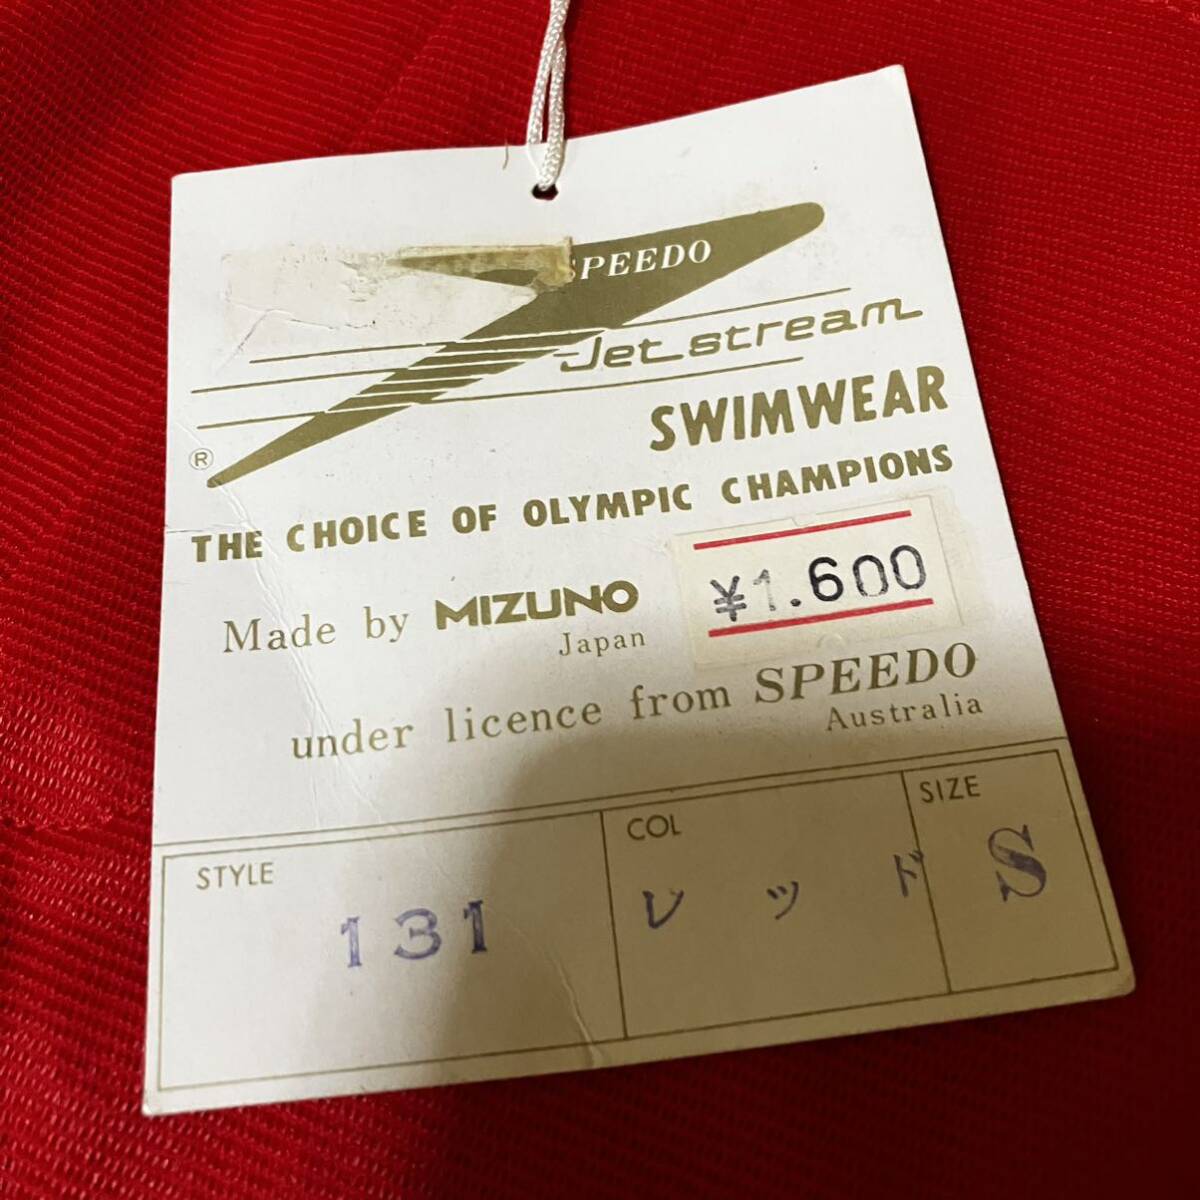 MIZUNO SPEEDO.. купальный костюм 131 S размер школьный купальник старый Logo Vintage подлинная вещь Япония стандартный товар . хлеб Mizuno скорость 